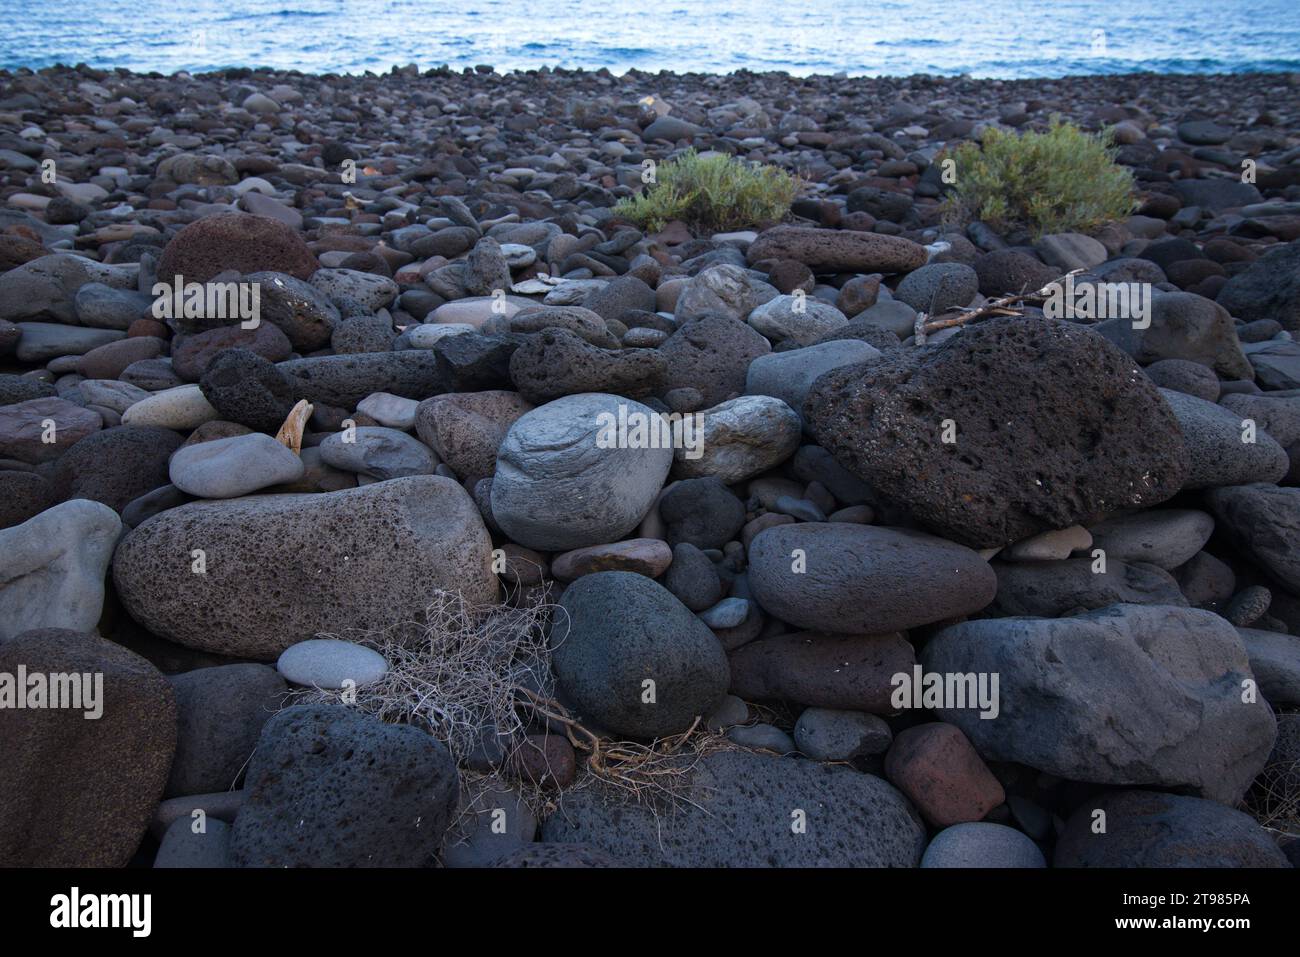 Rocks on a beach on the island of El Hierro. Rocas en una playa de la isla de El Hierro Stock Photo